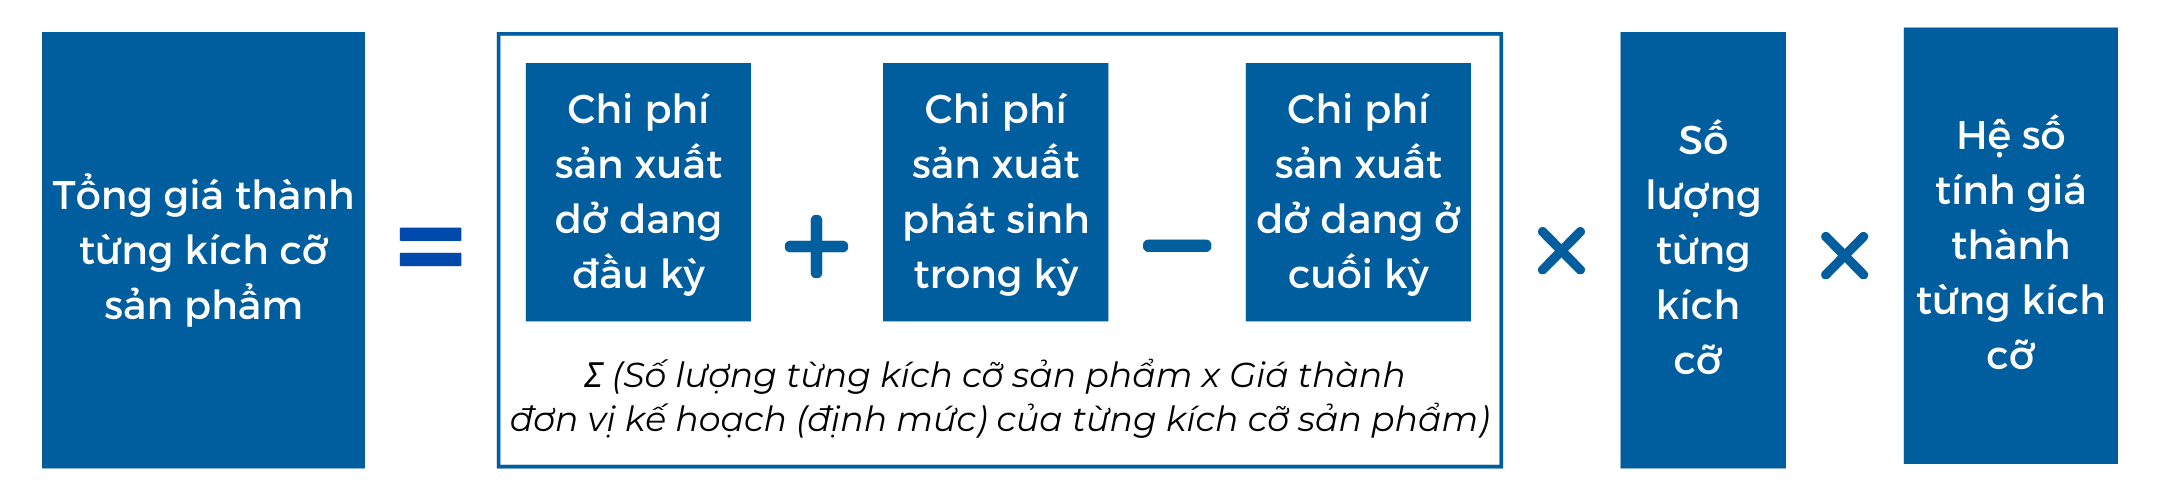 Phuong phap ty le dinh muc2 - Tính giá thành sản phẩm: Bài toán muôn thuở với các doanh nghiệp sản xuất